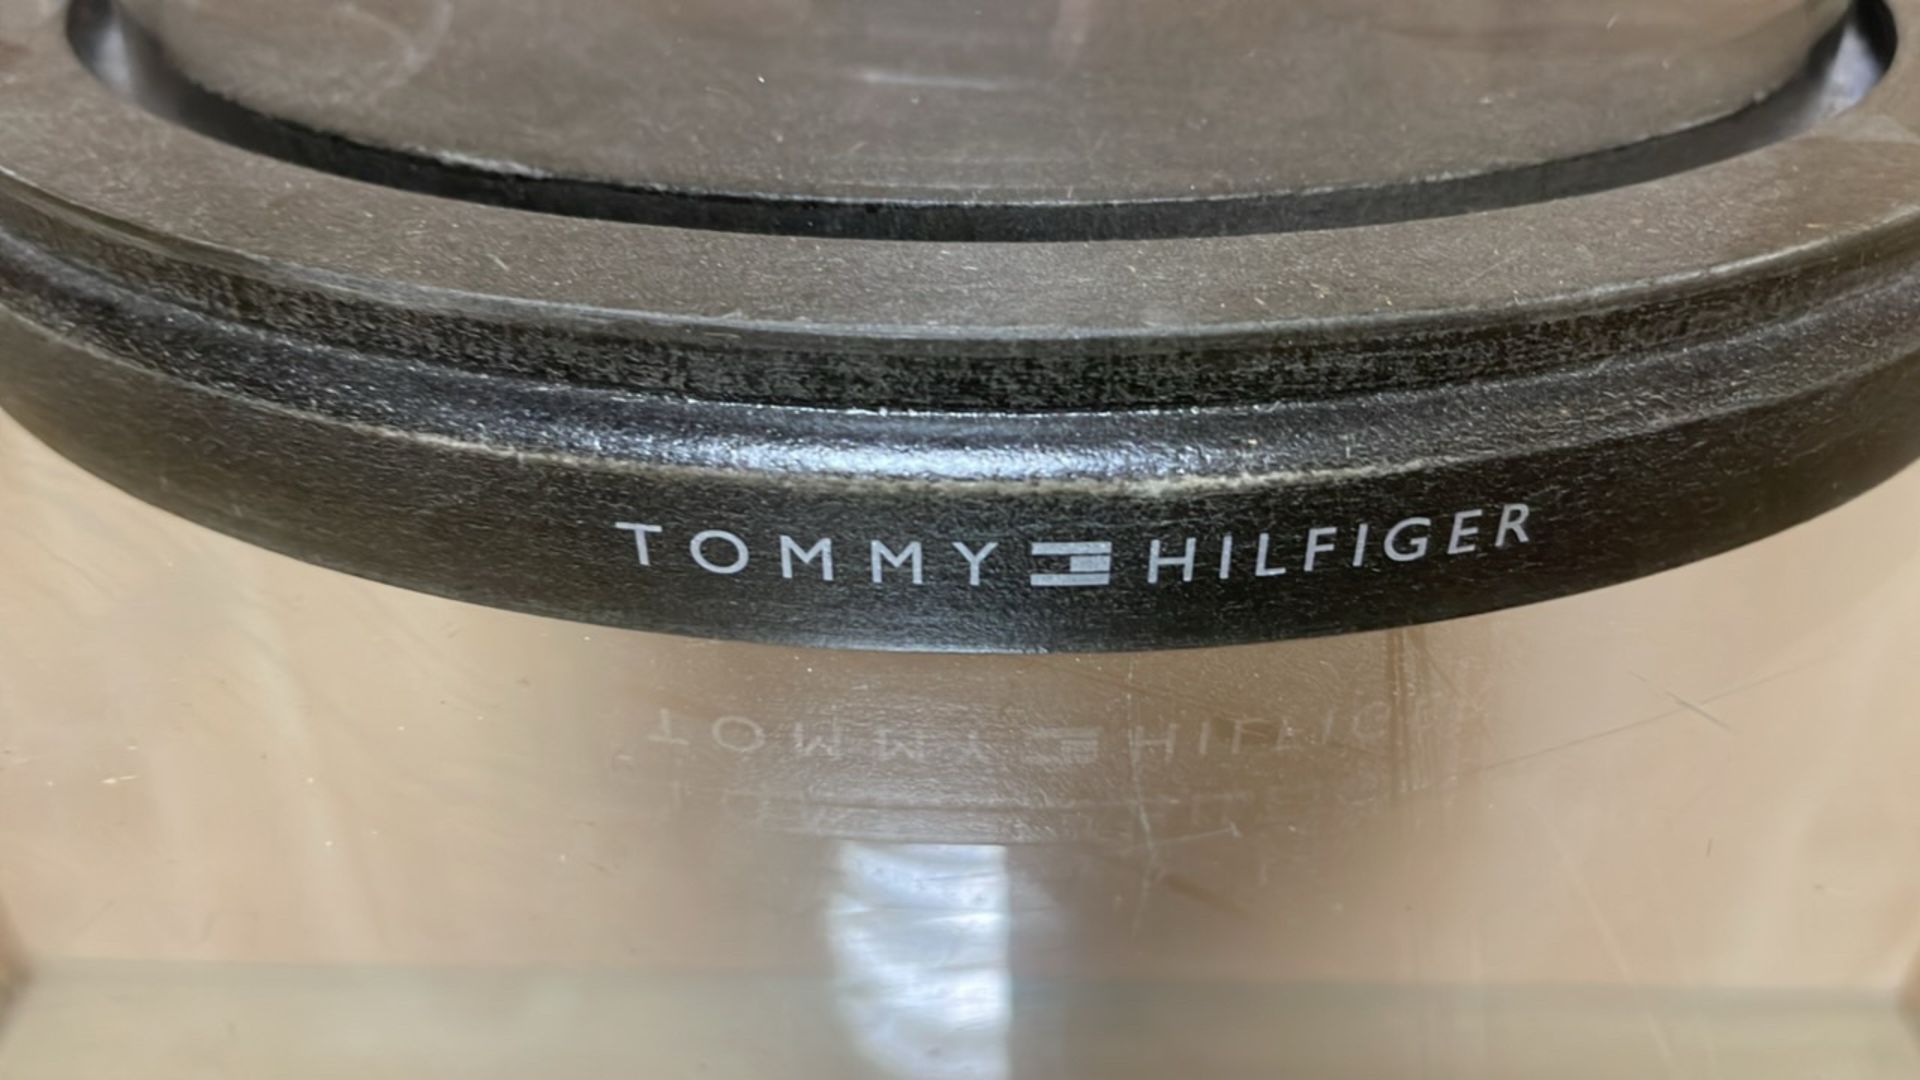 Tommy Hilfiger Glass Bell Jar - Image 3 of 3